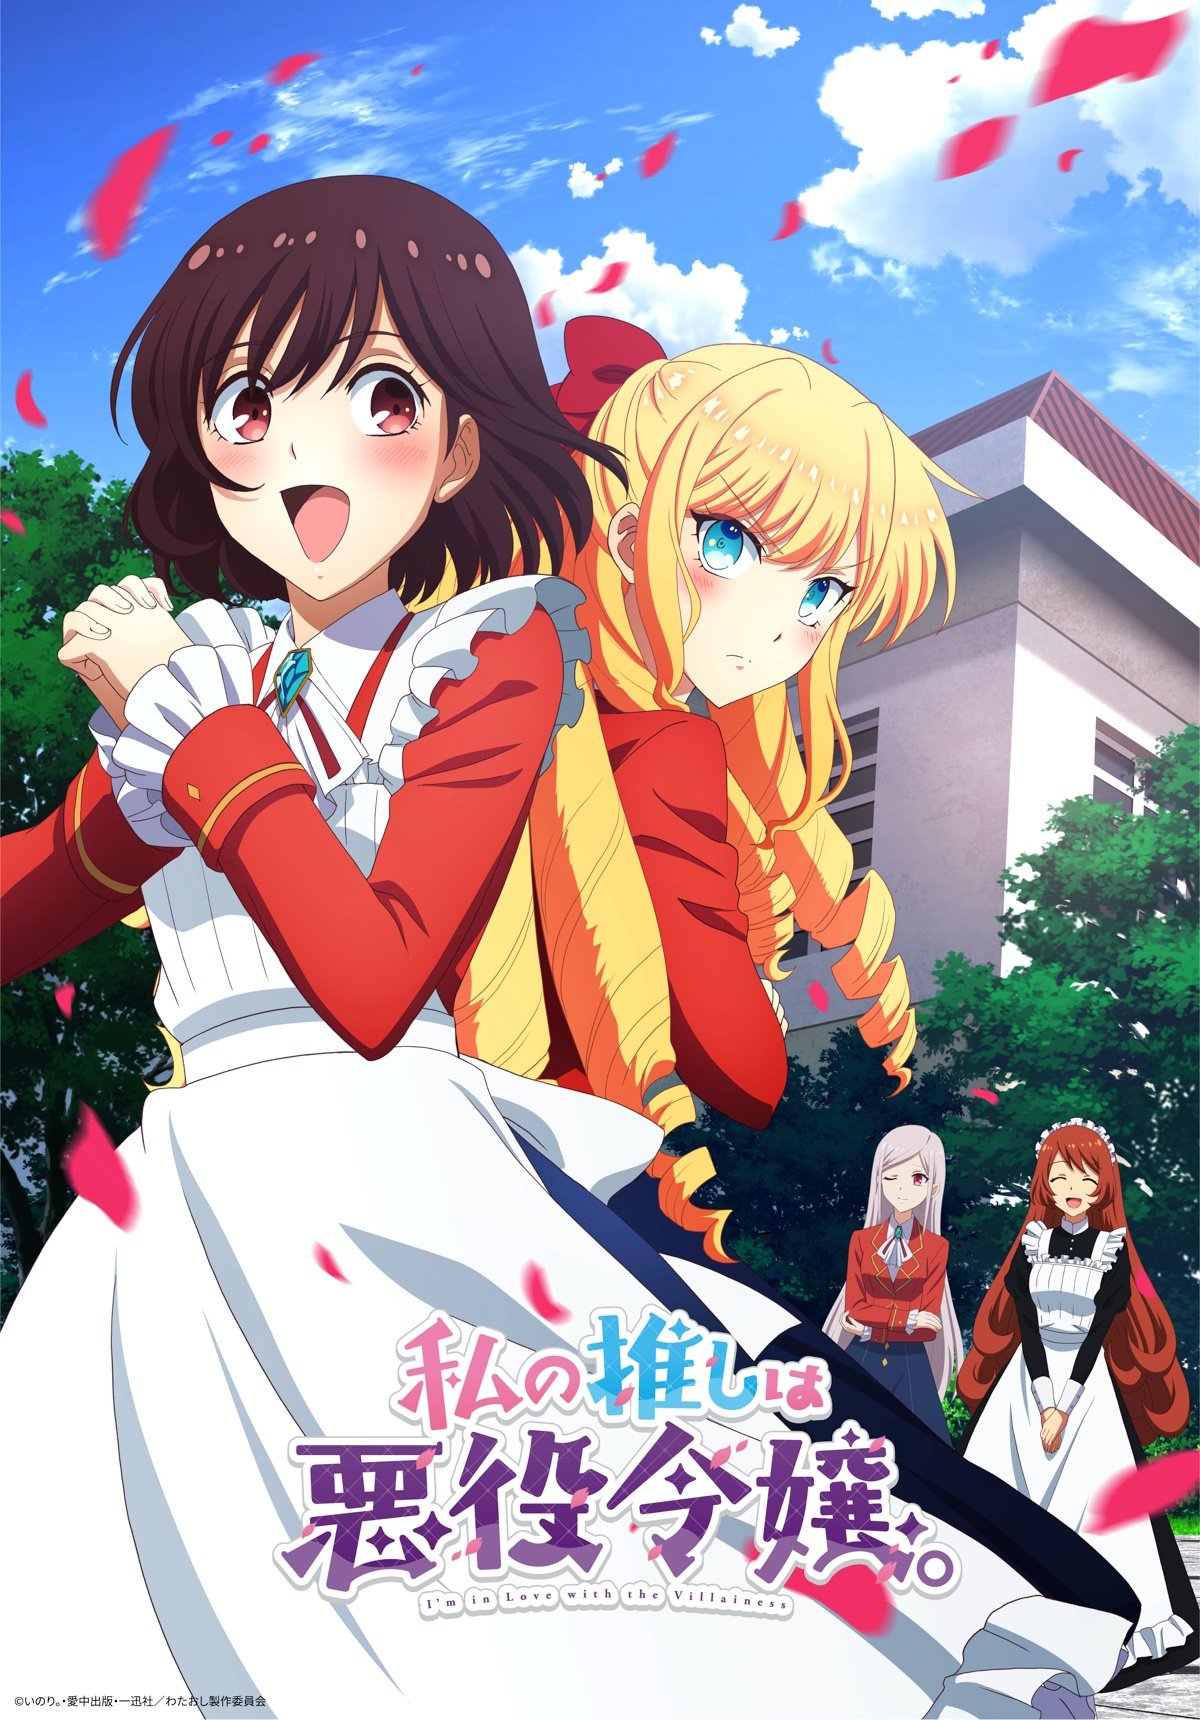 Anime: Watashi no oshi wa akuyaku reijou #anime #animes #edit #watashi